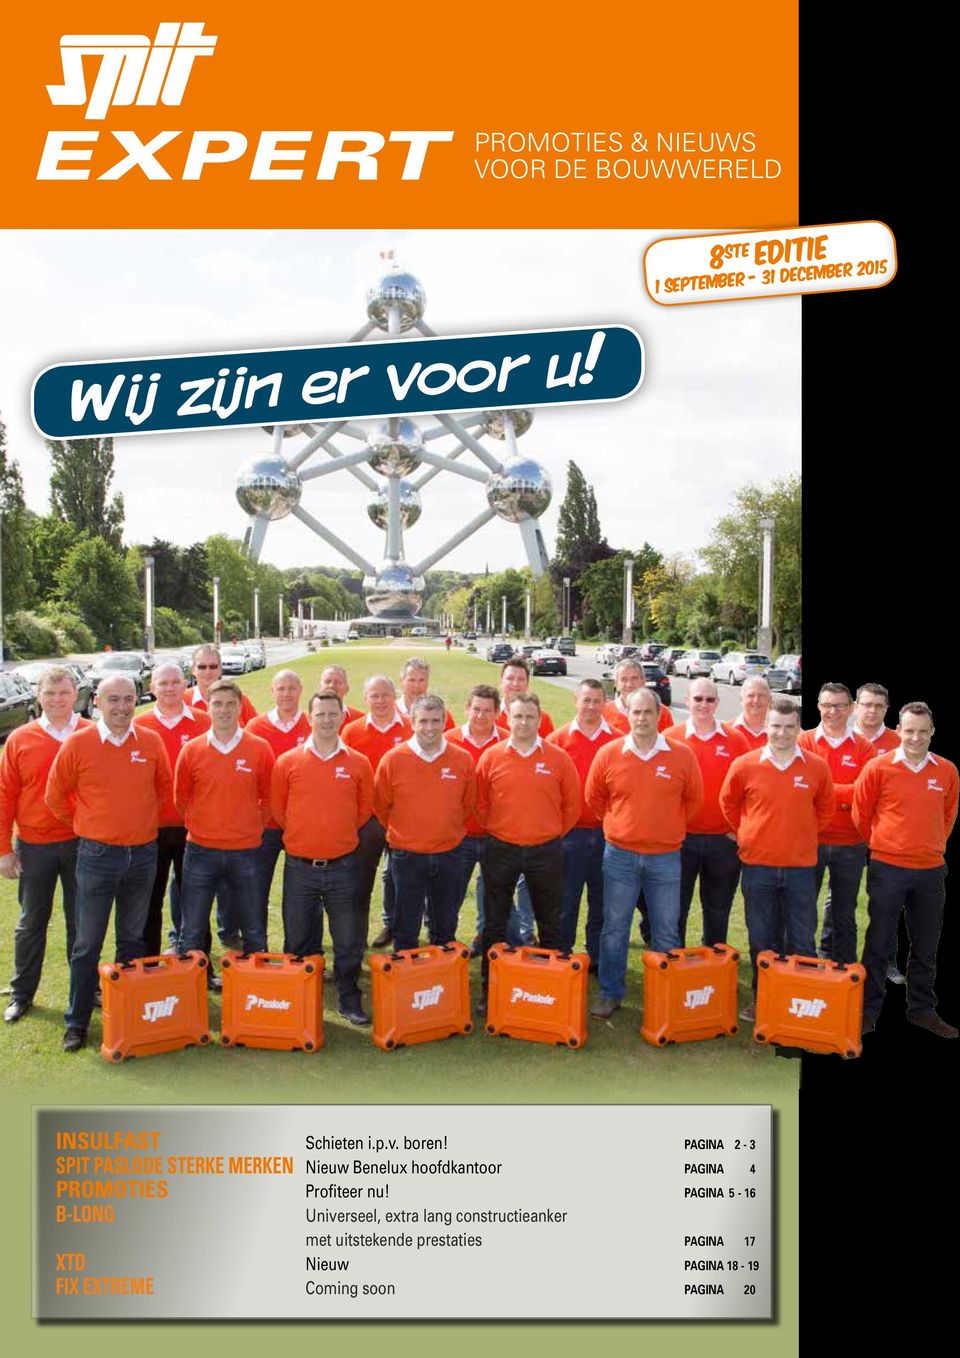 PAGINA 2-3 SPIT PASLODE STERKE MERKEN Nieuw Benelux hoofdkantoor PAGINA 4 TIES Profiteer nu!